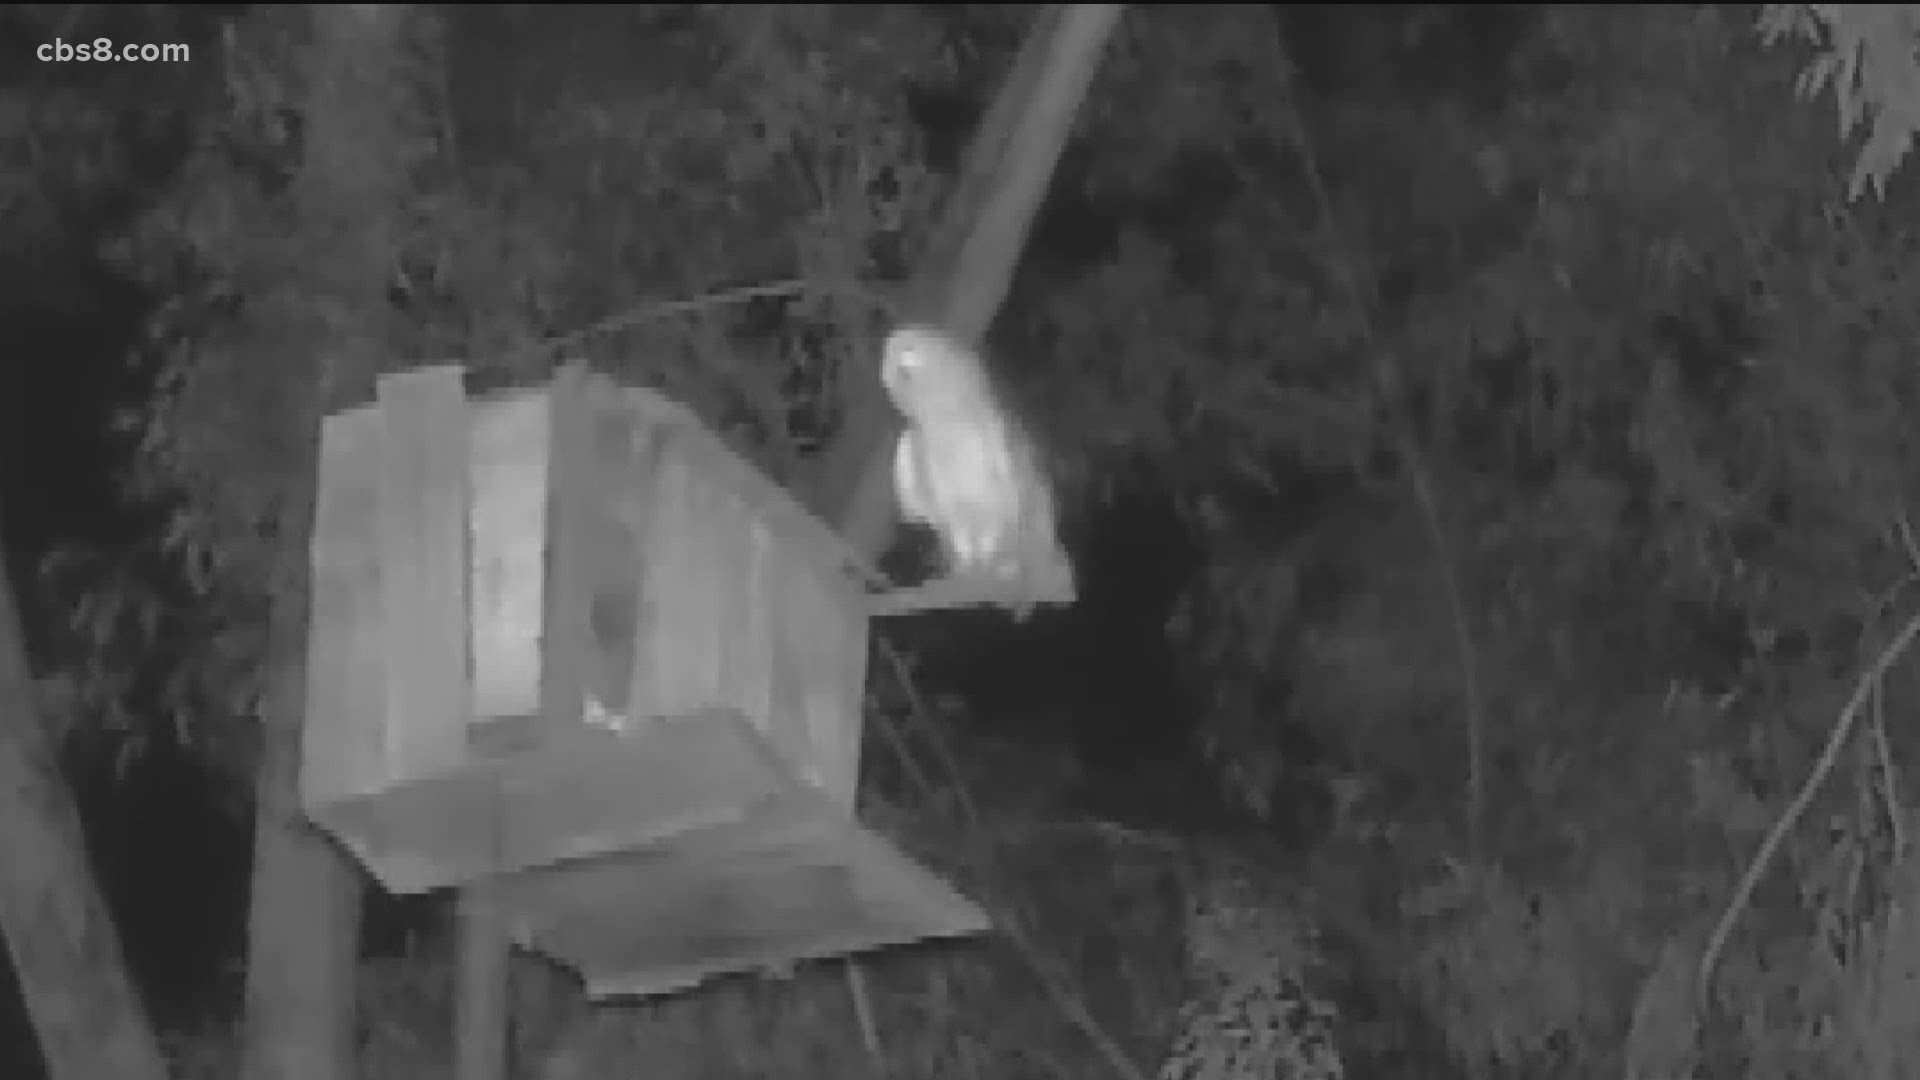 Alan Bielstein of Fletcher Hills is welcoming nesting owls to his backyard.